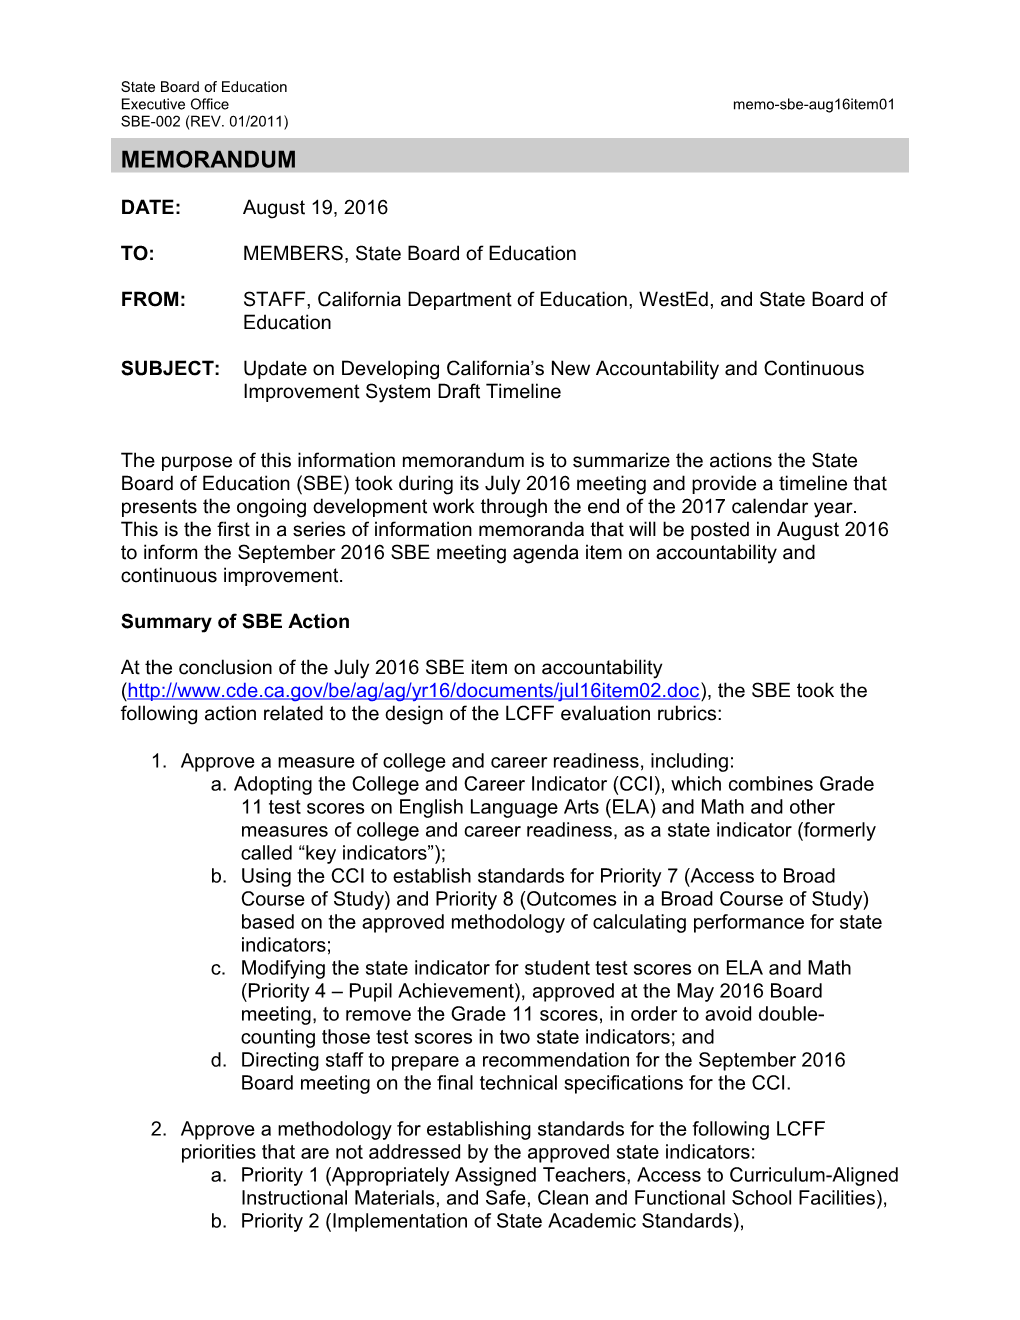 August 2016 Memo SBE Item 01 - Information Memorandum (CA State Board of Education)